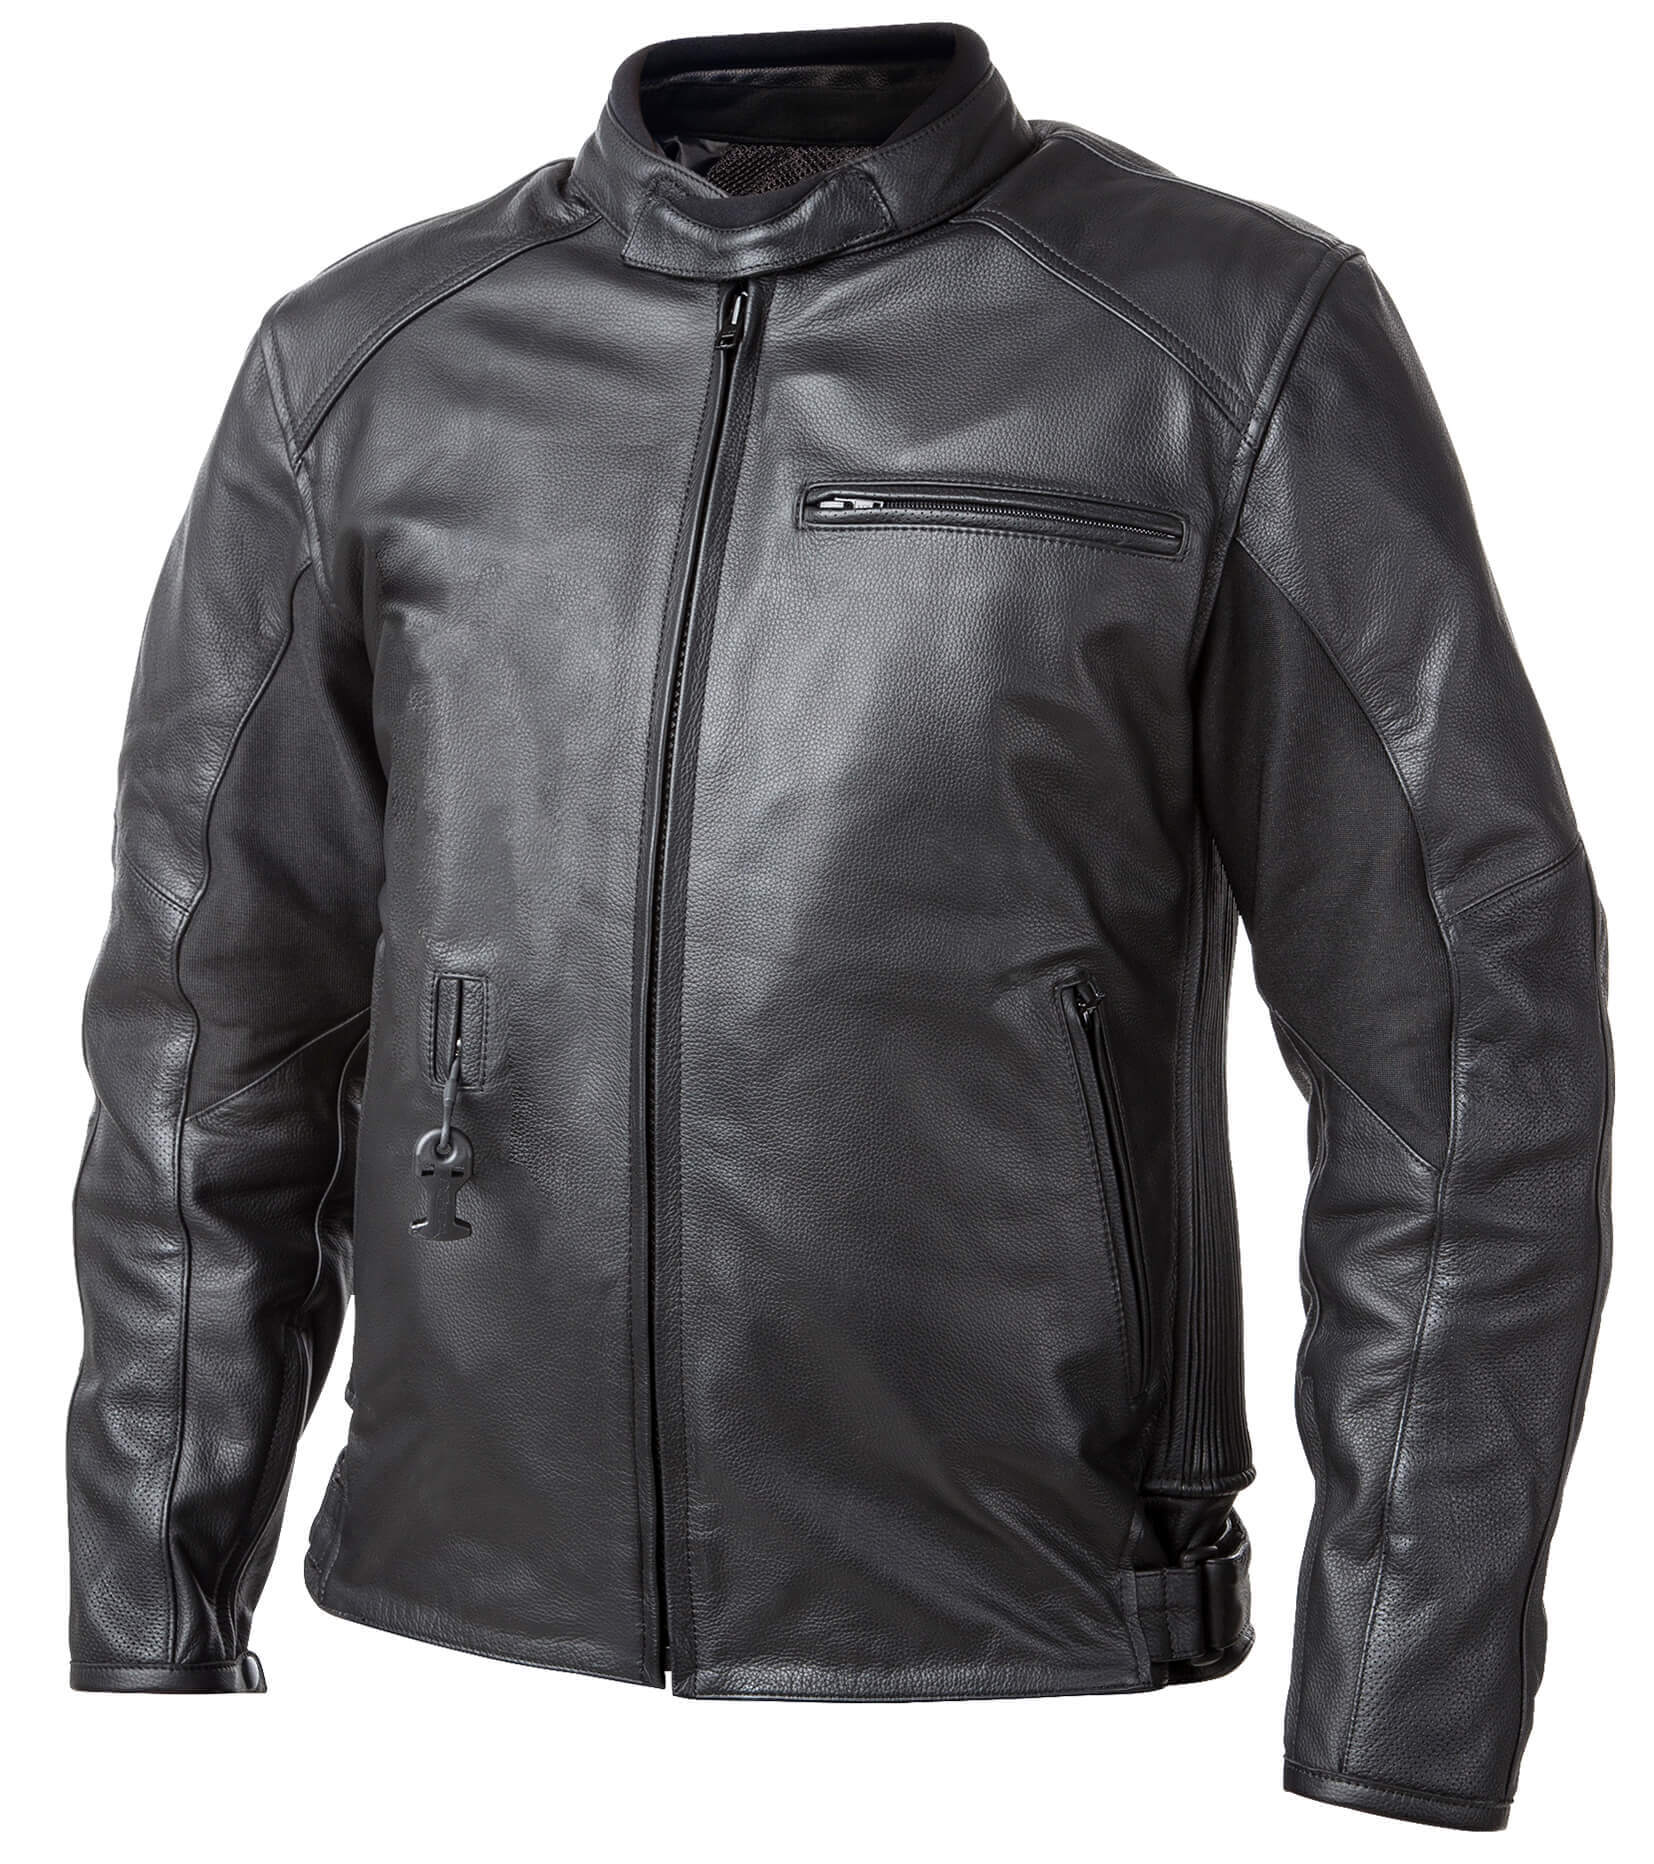 Airbag kabát Helite Roadster Vintage fekete bőr  L  Fekete